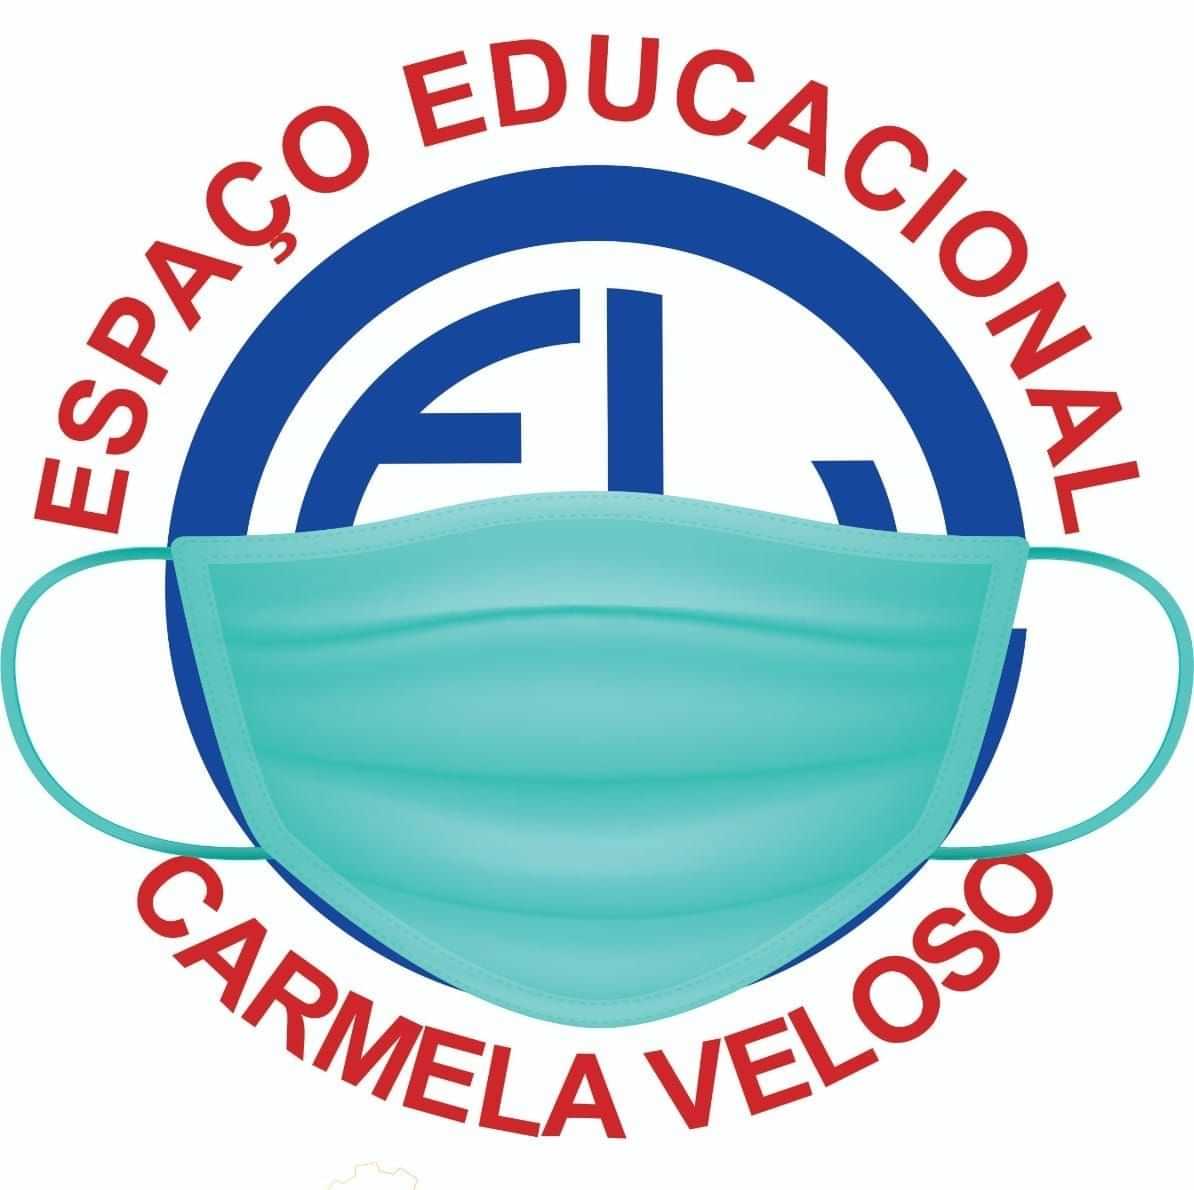  Espaço Educacional Carmela Veloso 